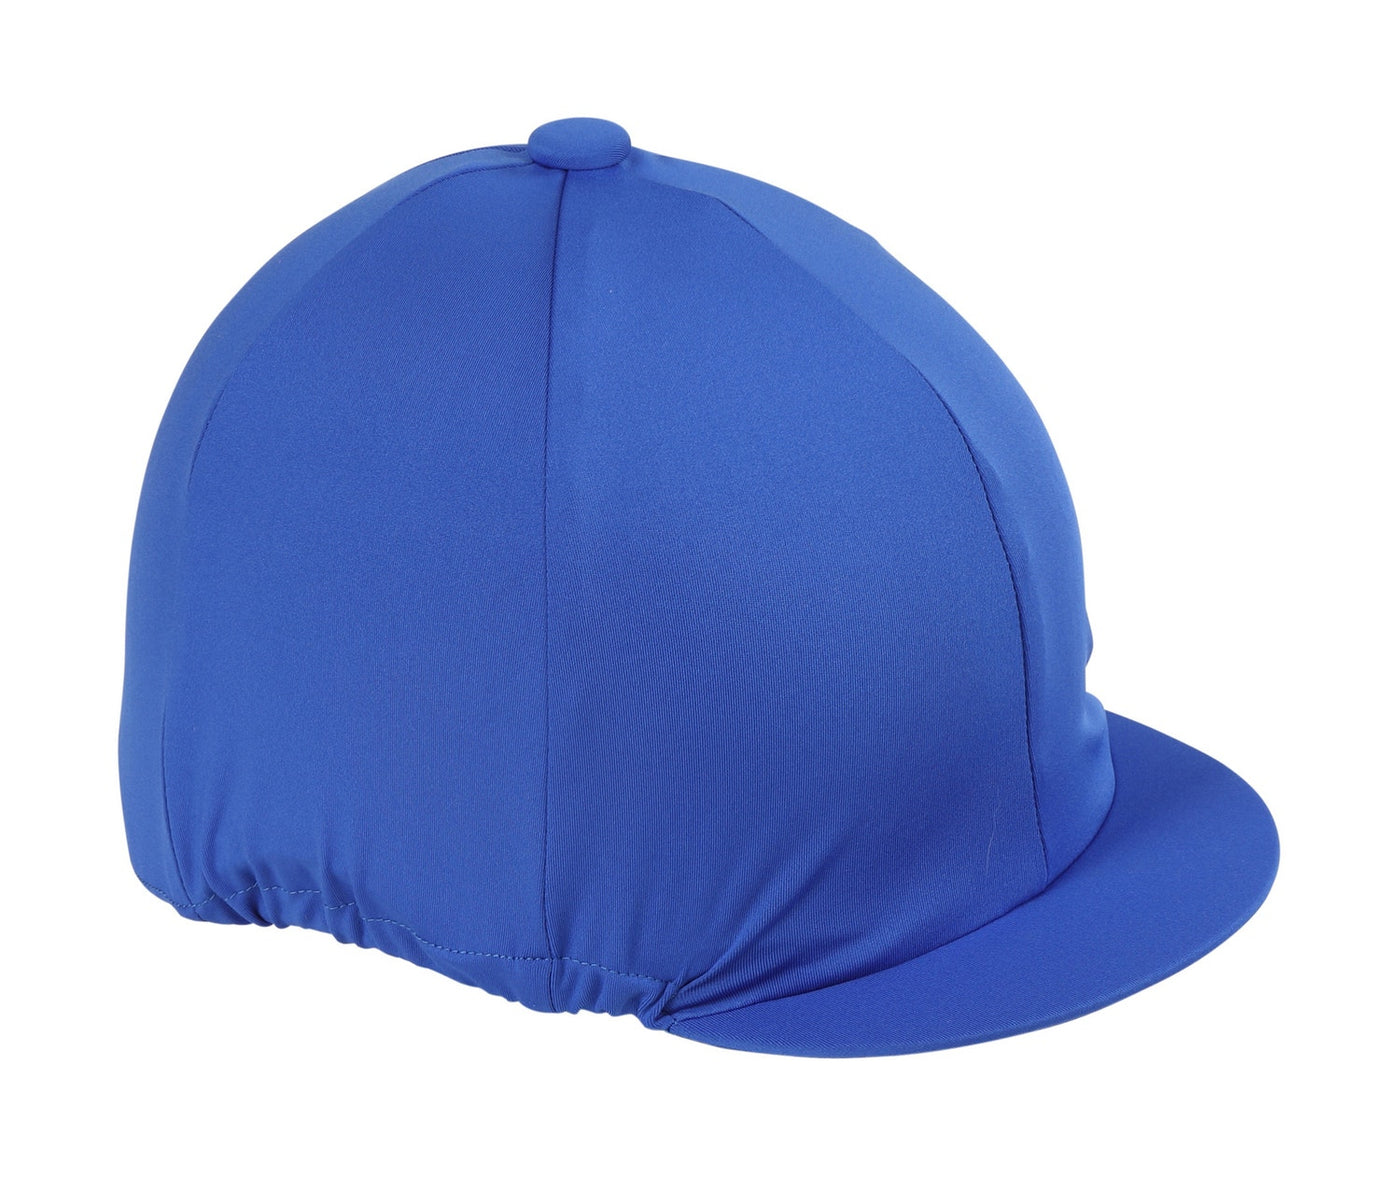 Shires Aubrion Hat Covers - Royal Blue 851